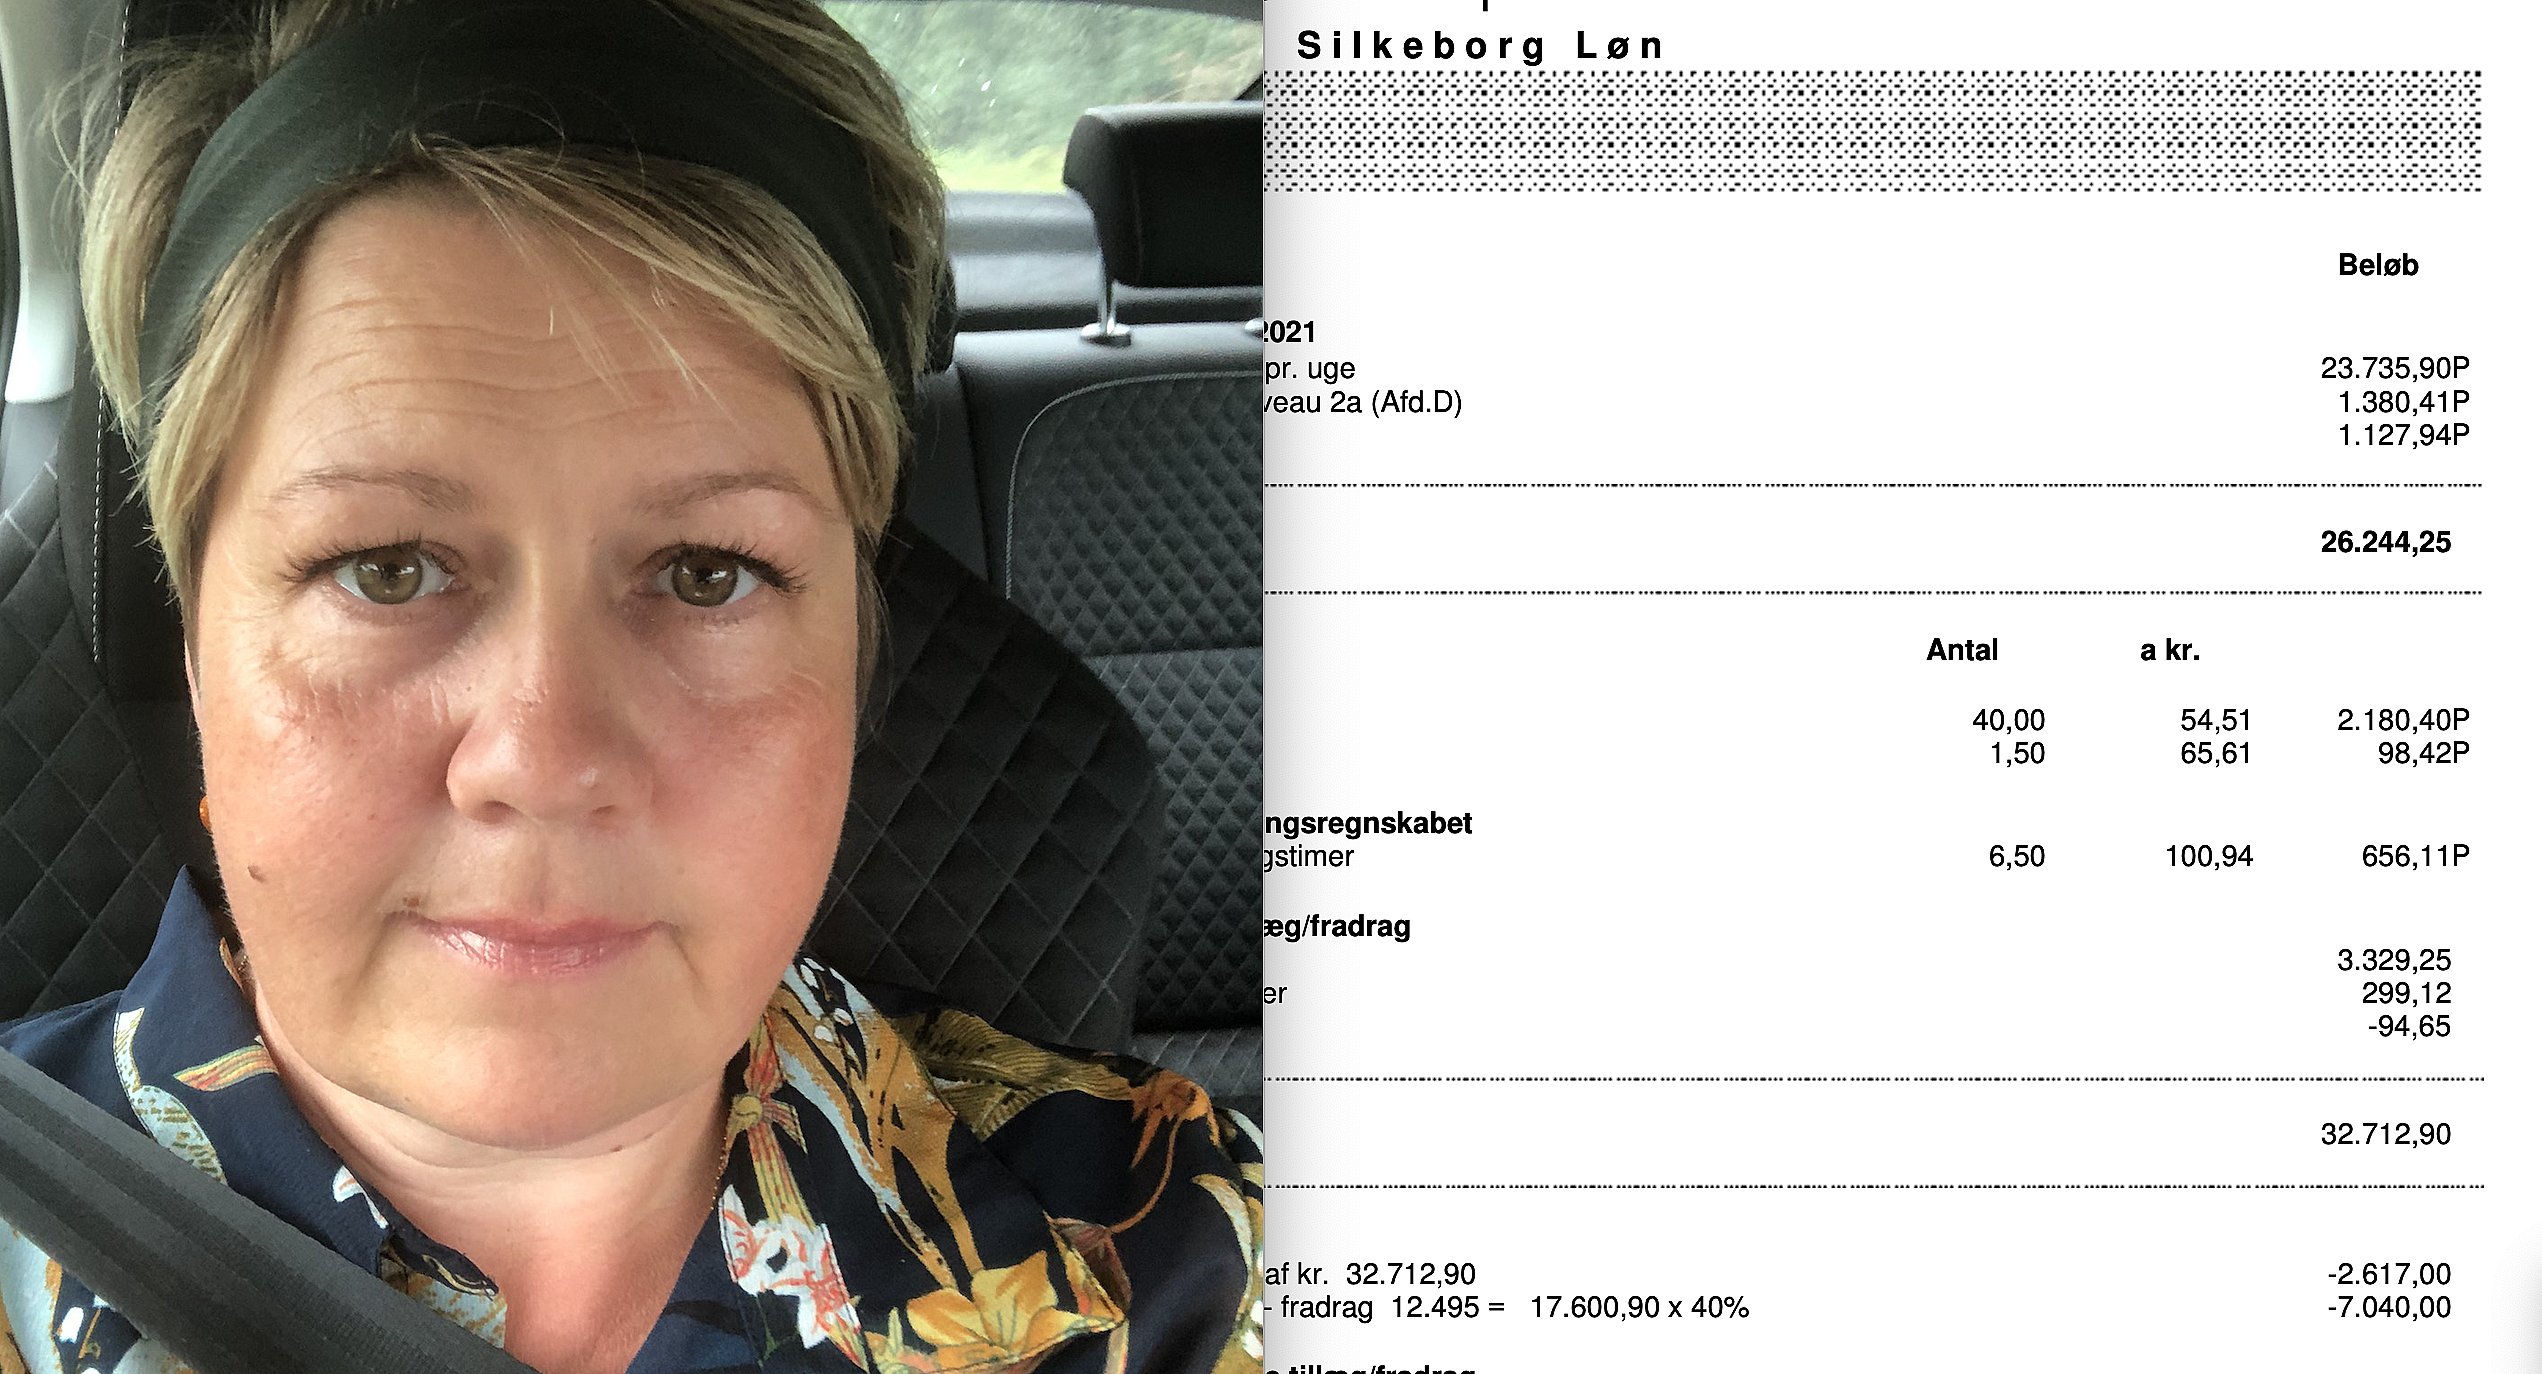 Kilde alene Børns dag Sygeplejerske Gitte viser sin løn frem: Kan ikke genkende de 42.800 kroner  | TV2 Fyn